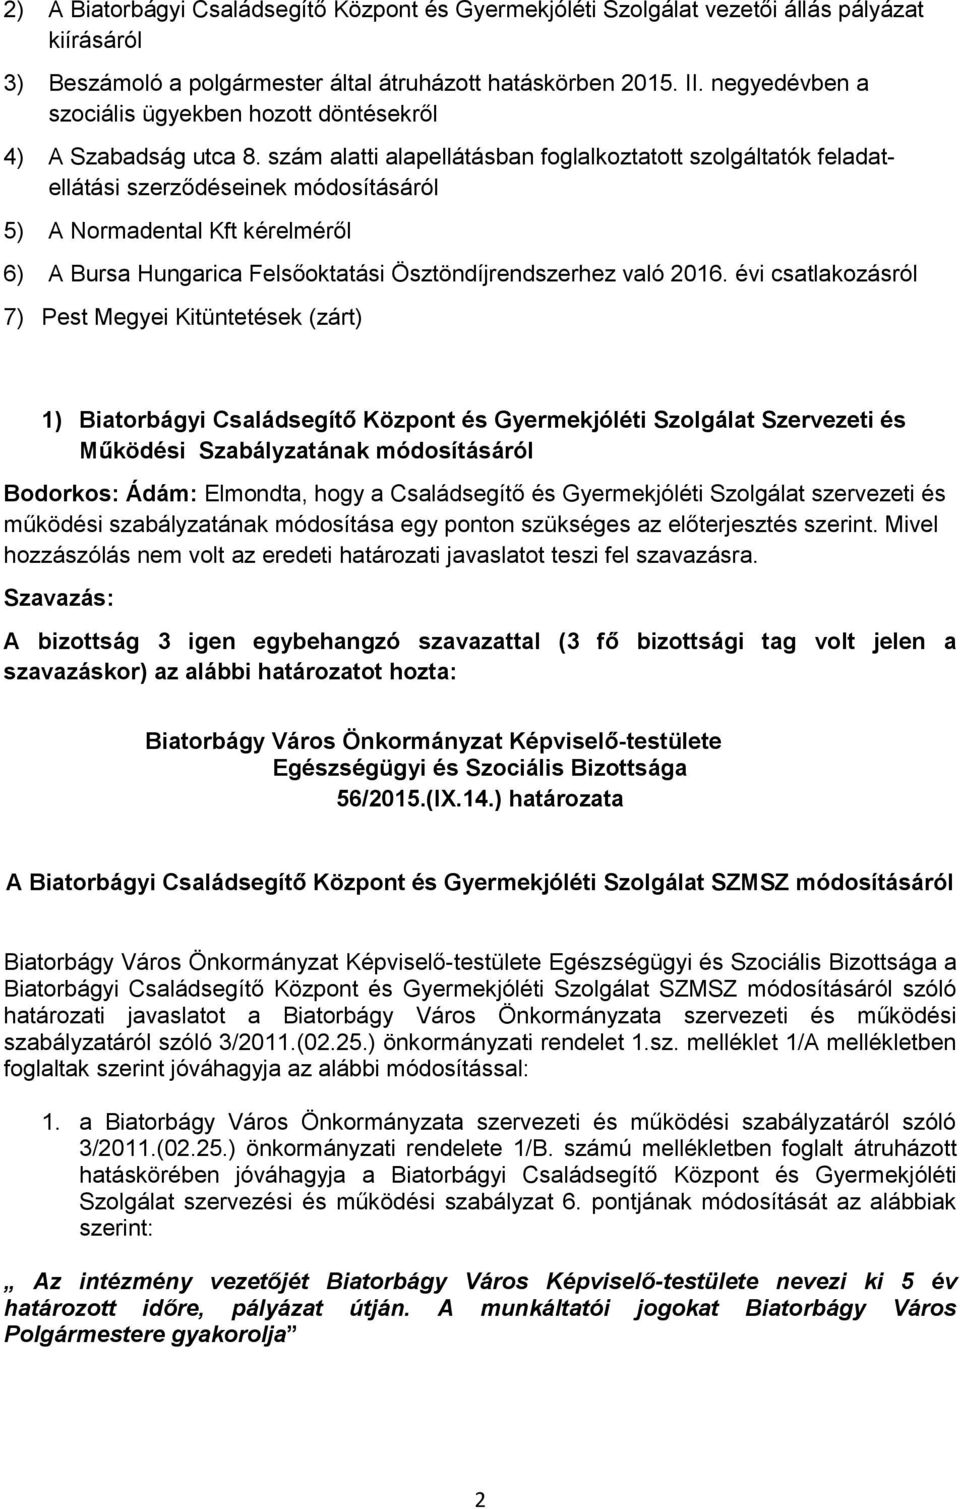 szám alatti alapellátásban foglalkoztatott szolgáltatók feladatellátási szerződéseinek módosításáról 5) A Normadental Kft kérelméről 6) A Bursa Hungarica Felsőoktatási Ösztöndíjrendszerhez való 2016.